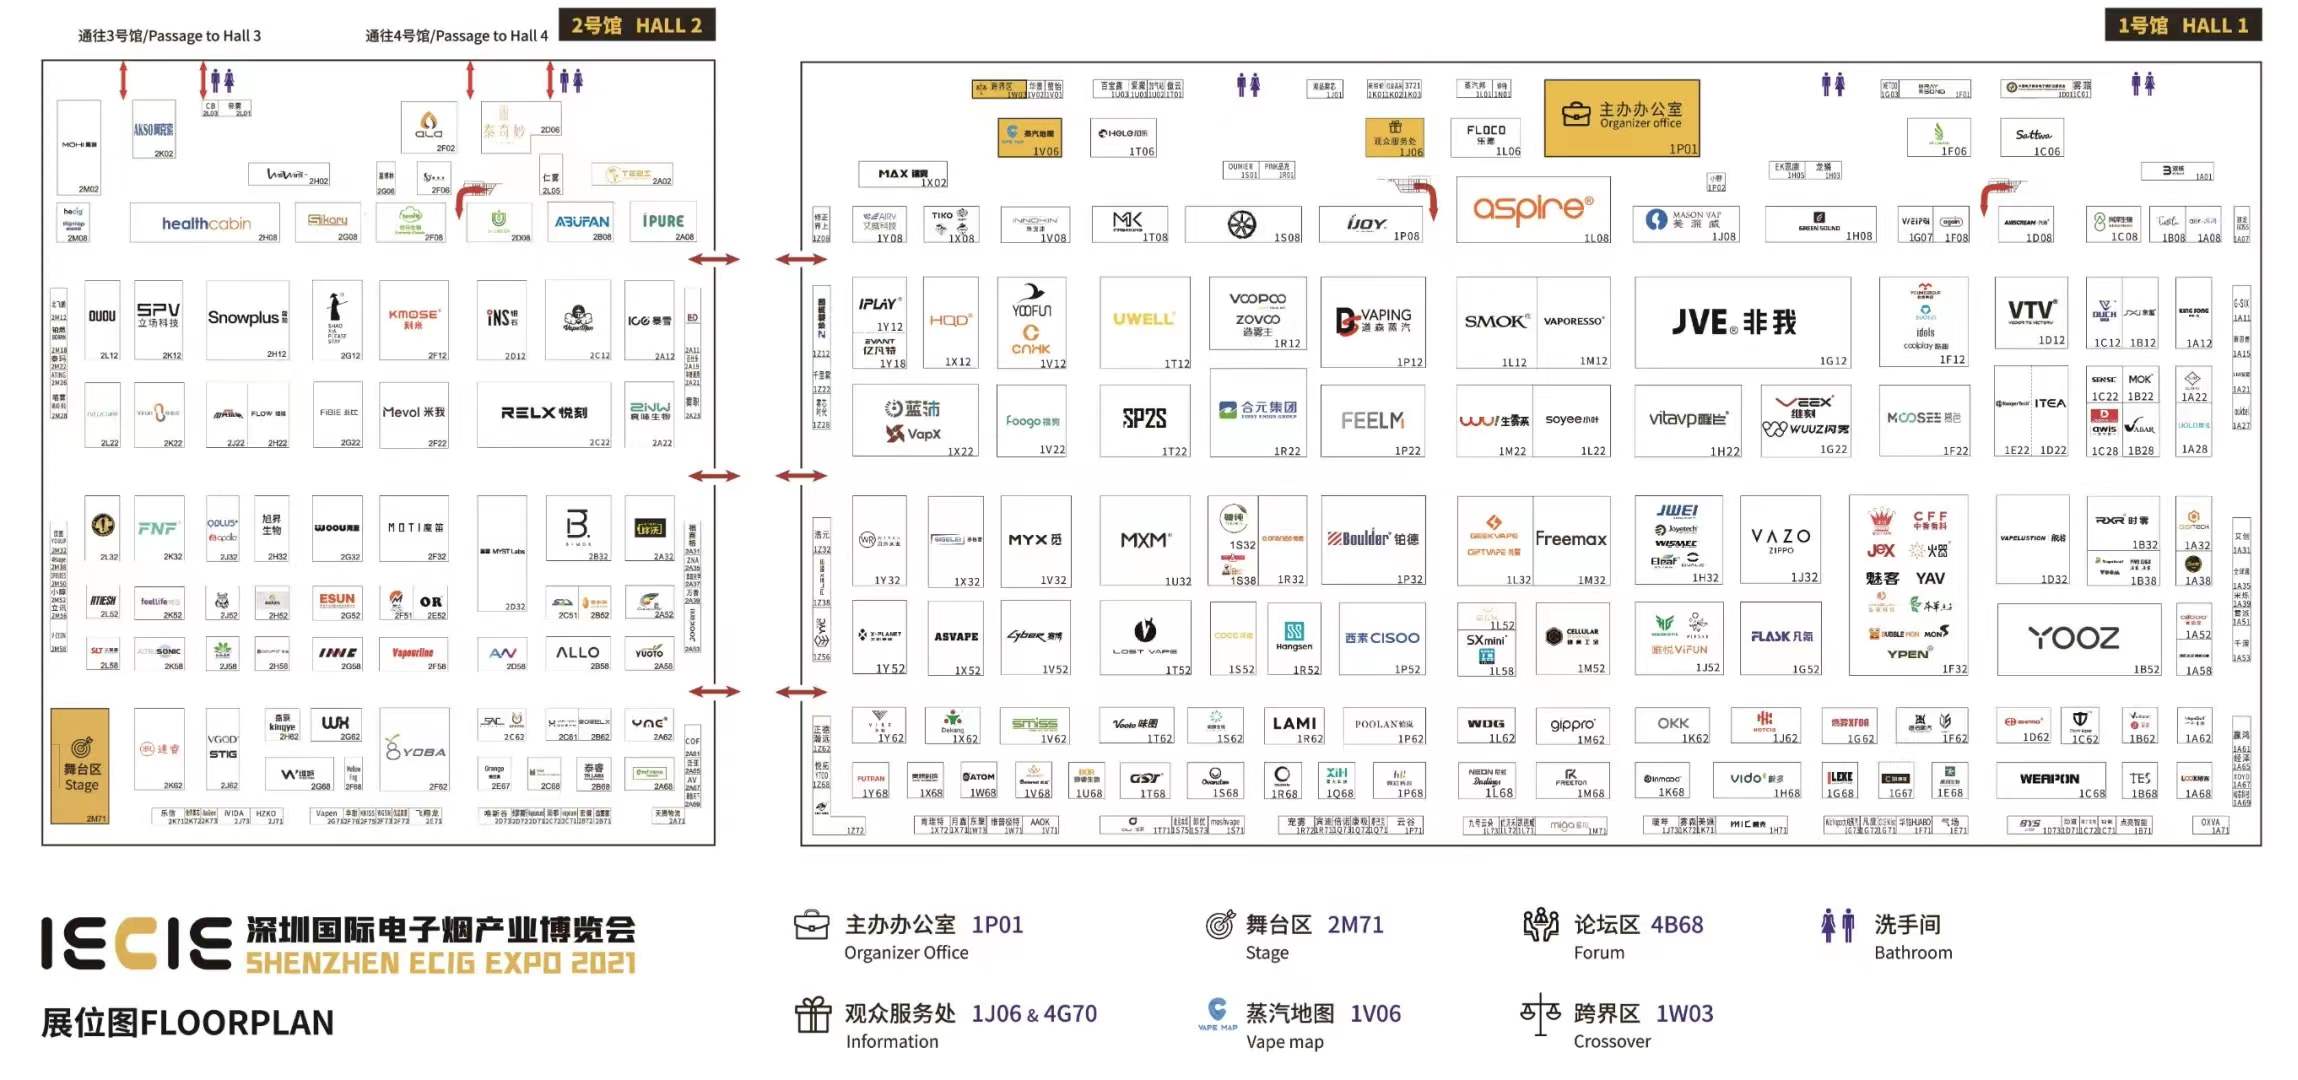 Plan d'étage de l'exposition E-cig de Shenzhen 2021